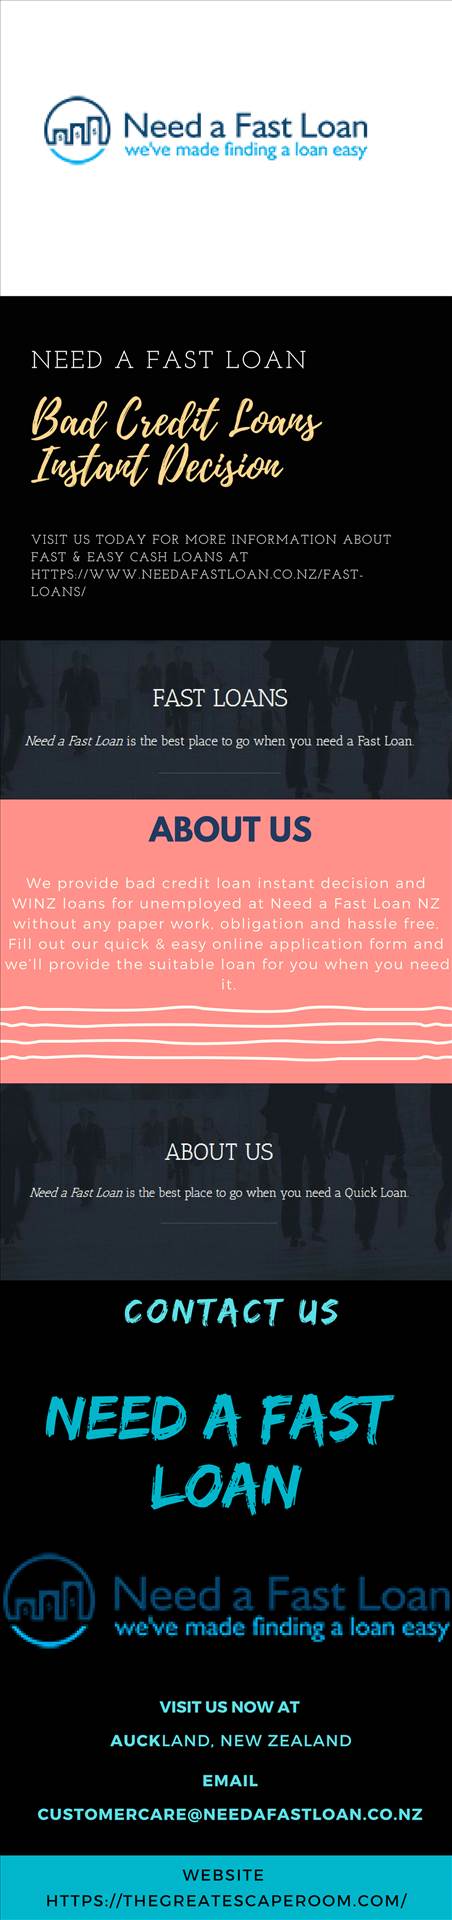 Bad Credit Loans.jpg  by Needafastloan